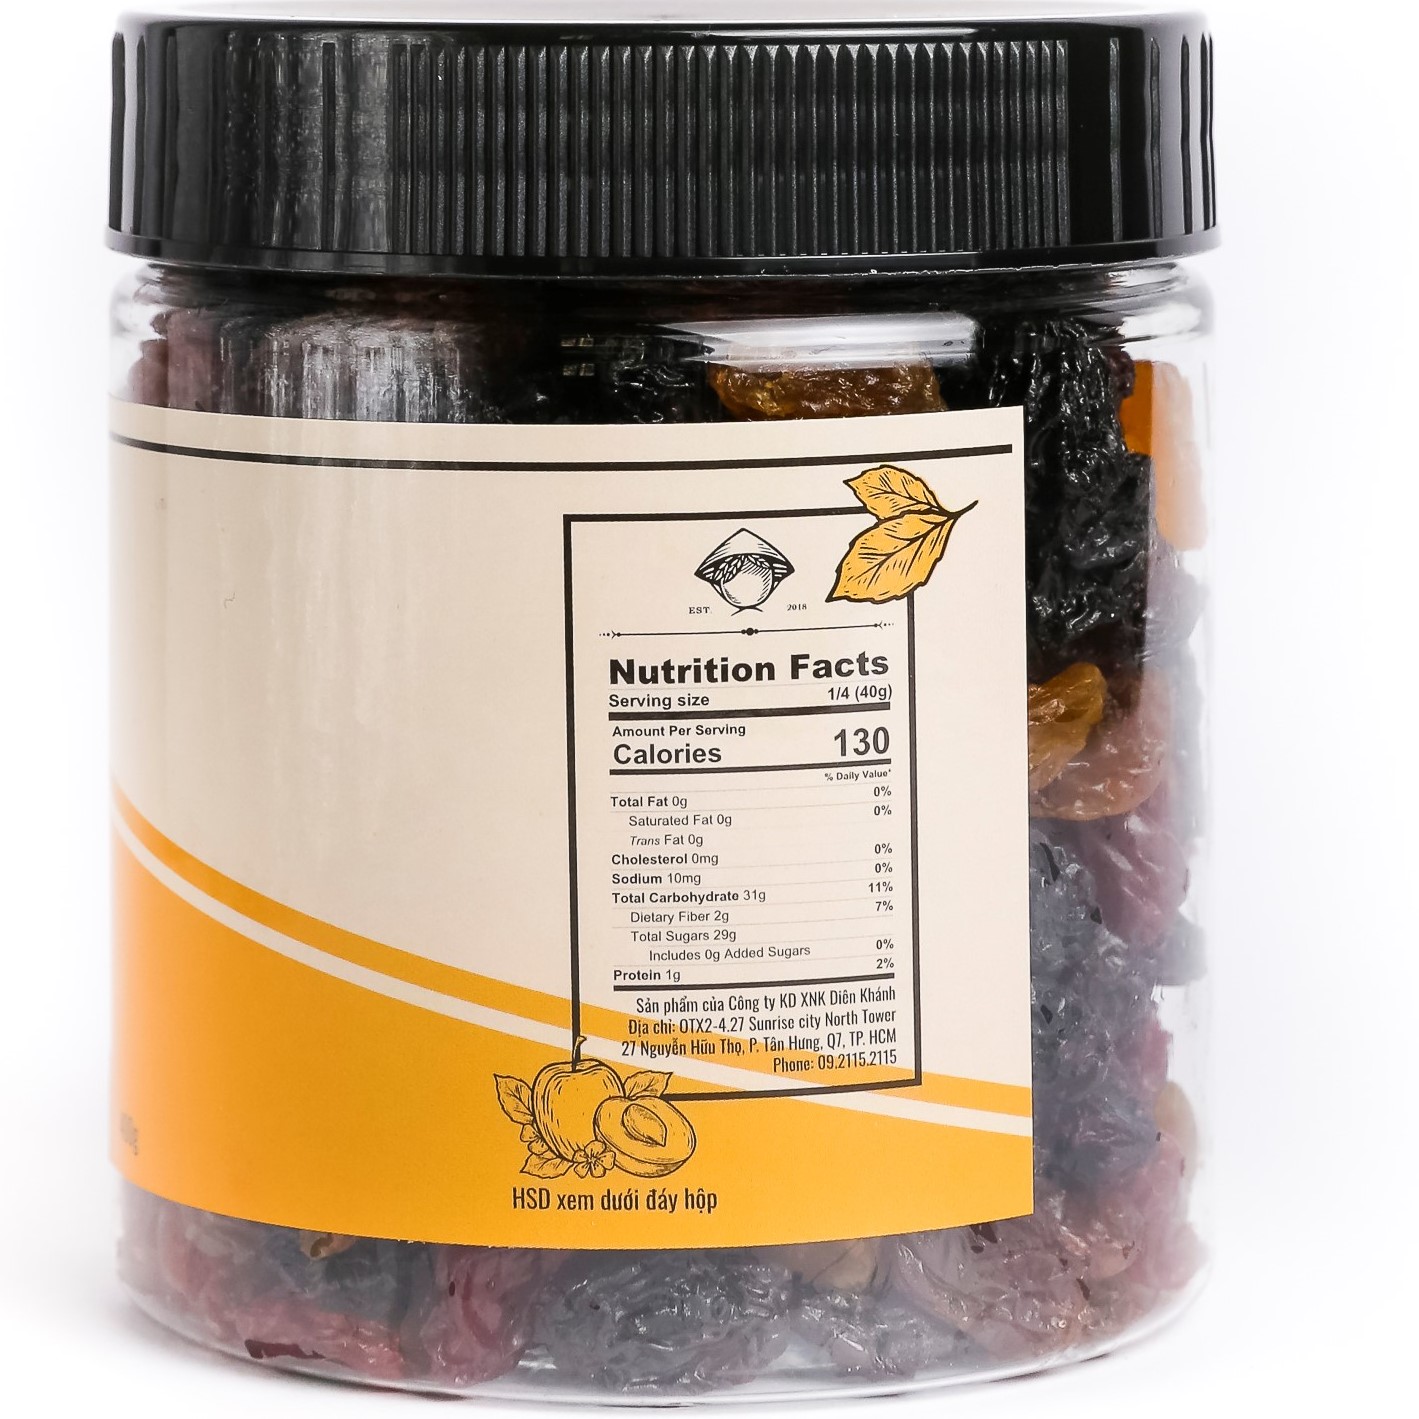 Nho Khô Raisins 3 Màu Không Hạt DK Harvest (Hàng Nhập Khẩu Chile)  - Thơm ngon, vị ngọt tự nhiên, không pha trộn thêm đường hay chất tạo ngọt